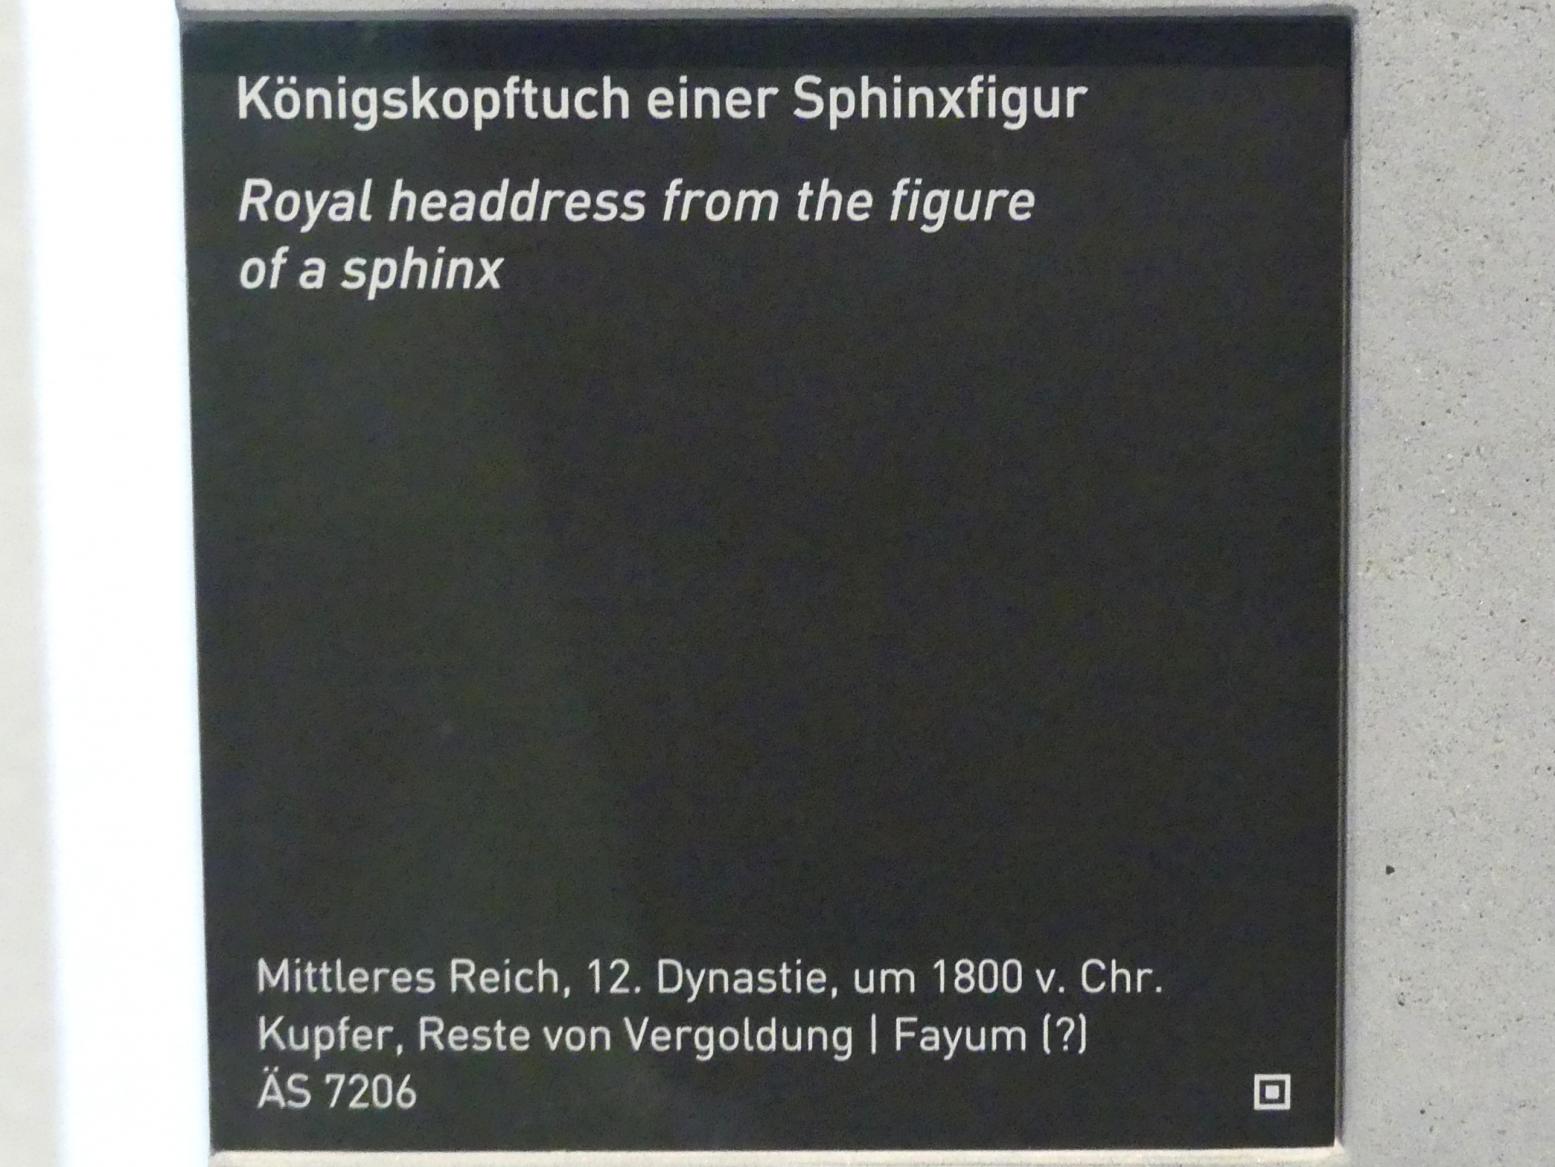 Königskopftuch einer Sphinxfigur, 12. Dynastie, 1678 - 1634 v. Chr., 1800 v. Chr., Bild 4/4